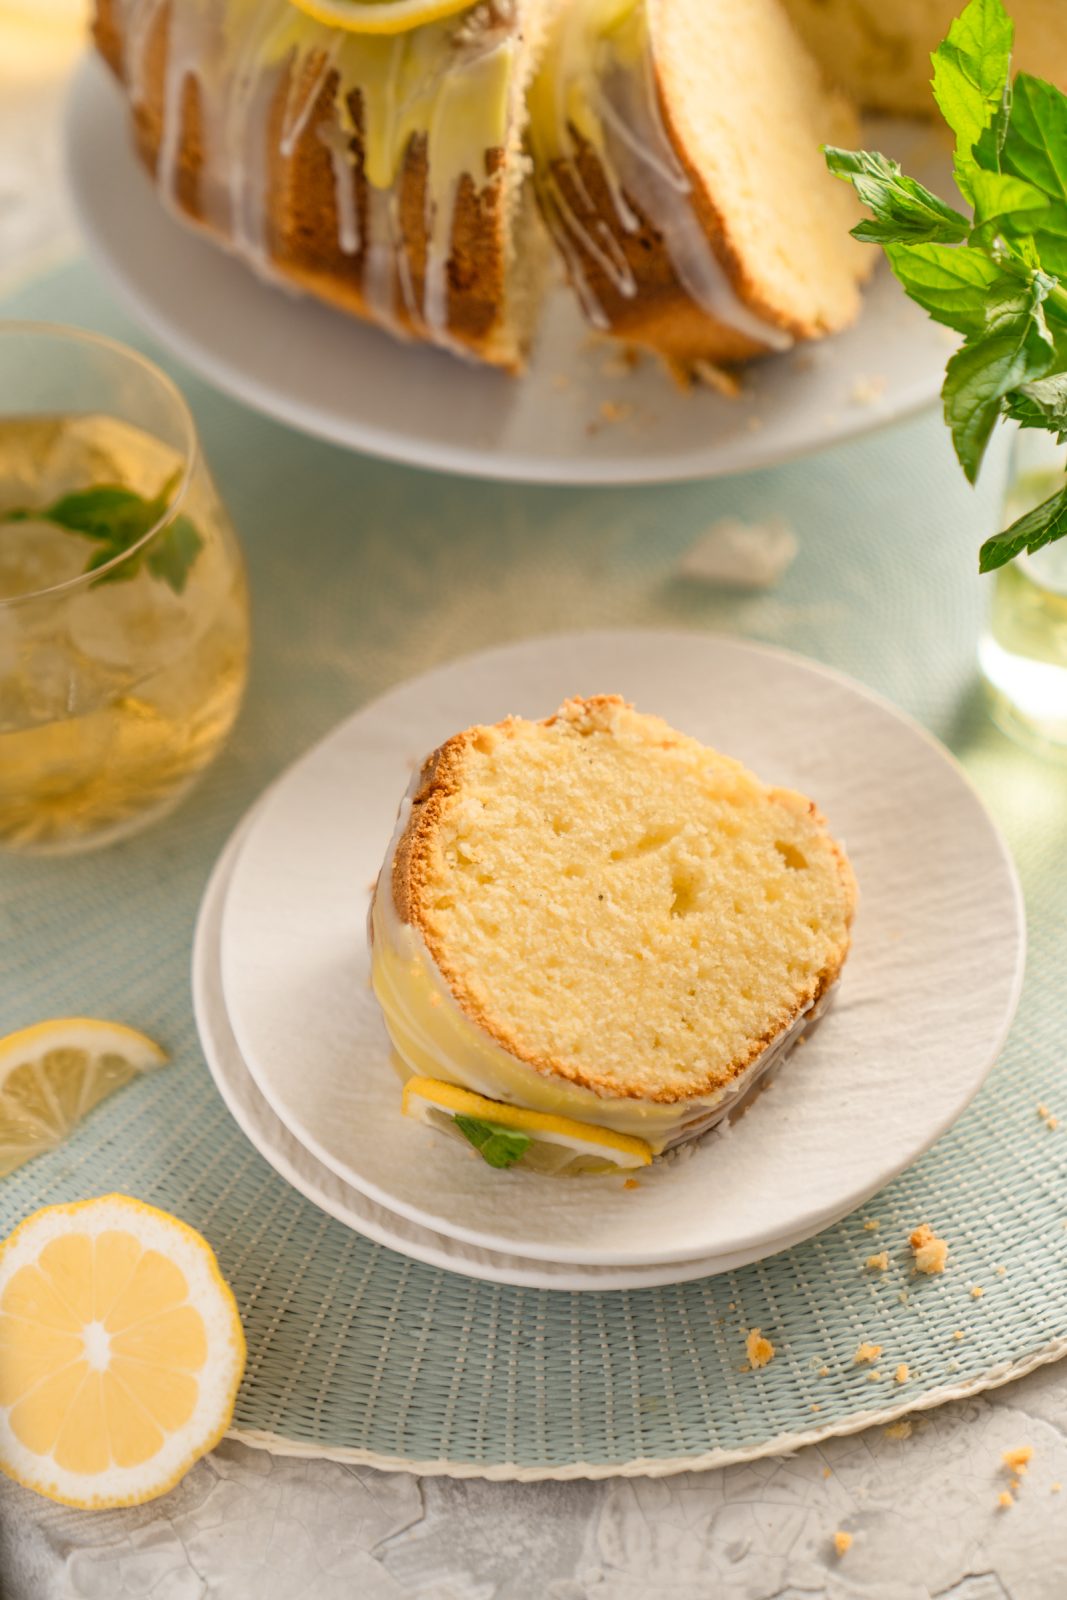 Rezept für saftiger Zitronen-Gugl. Einer unserer Favoriten an "trockenen" Kuchen. Schnell und easy gemacht und super saftig!